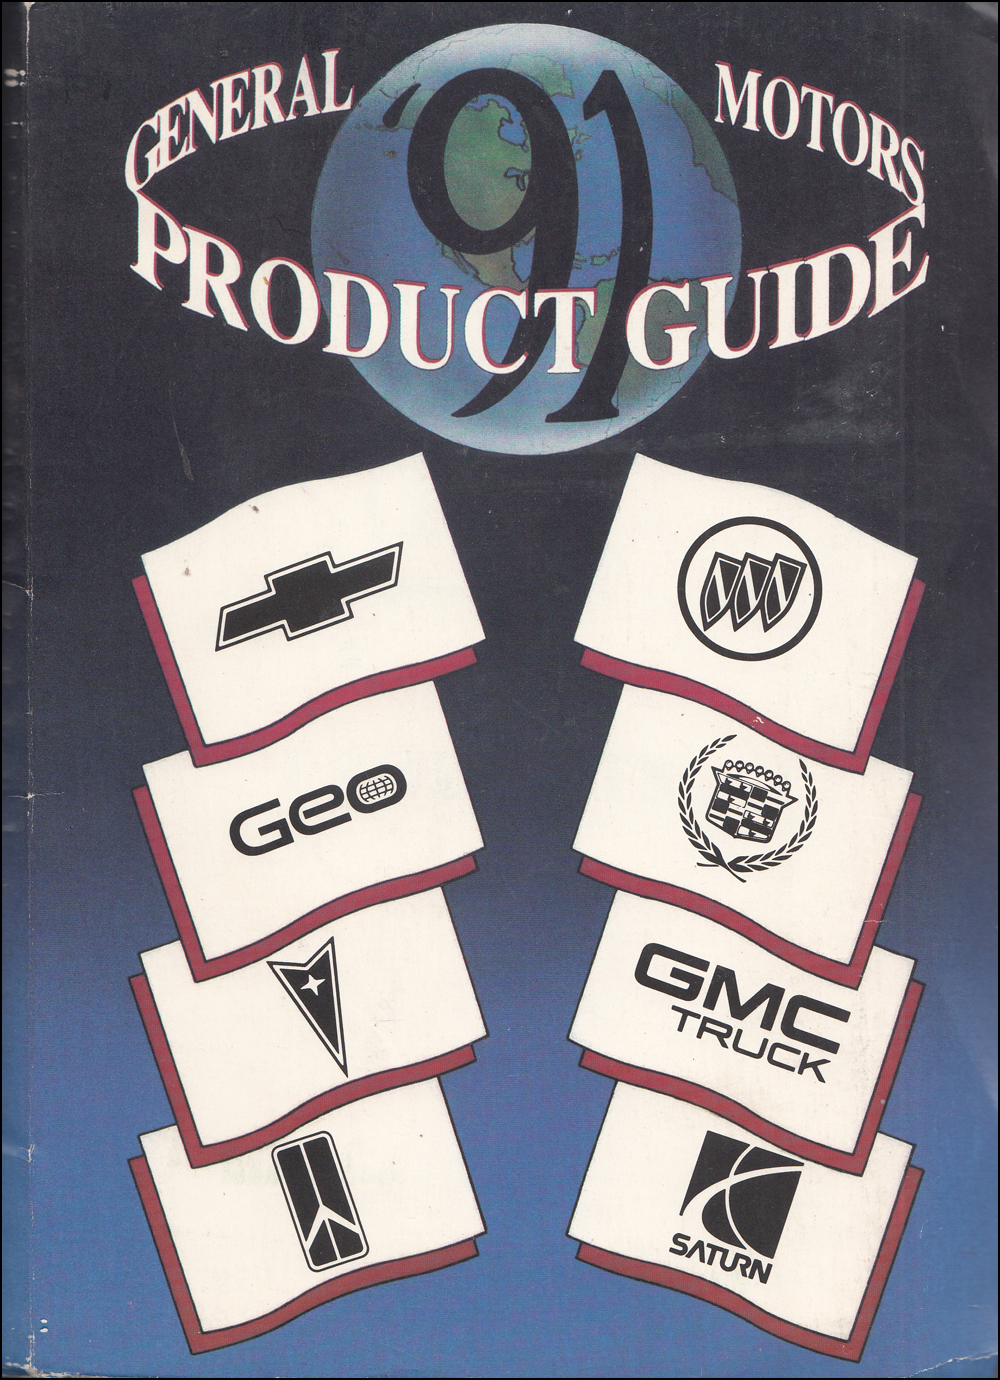 1991 General Motors Product Guide Original